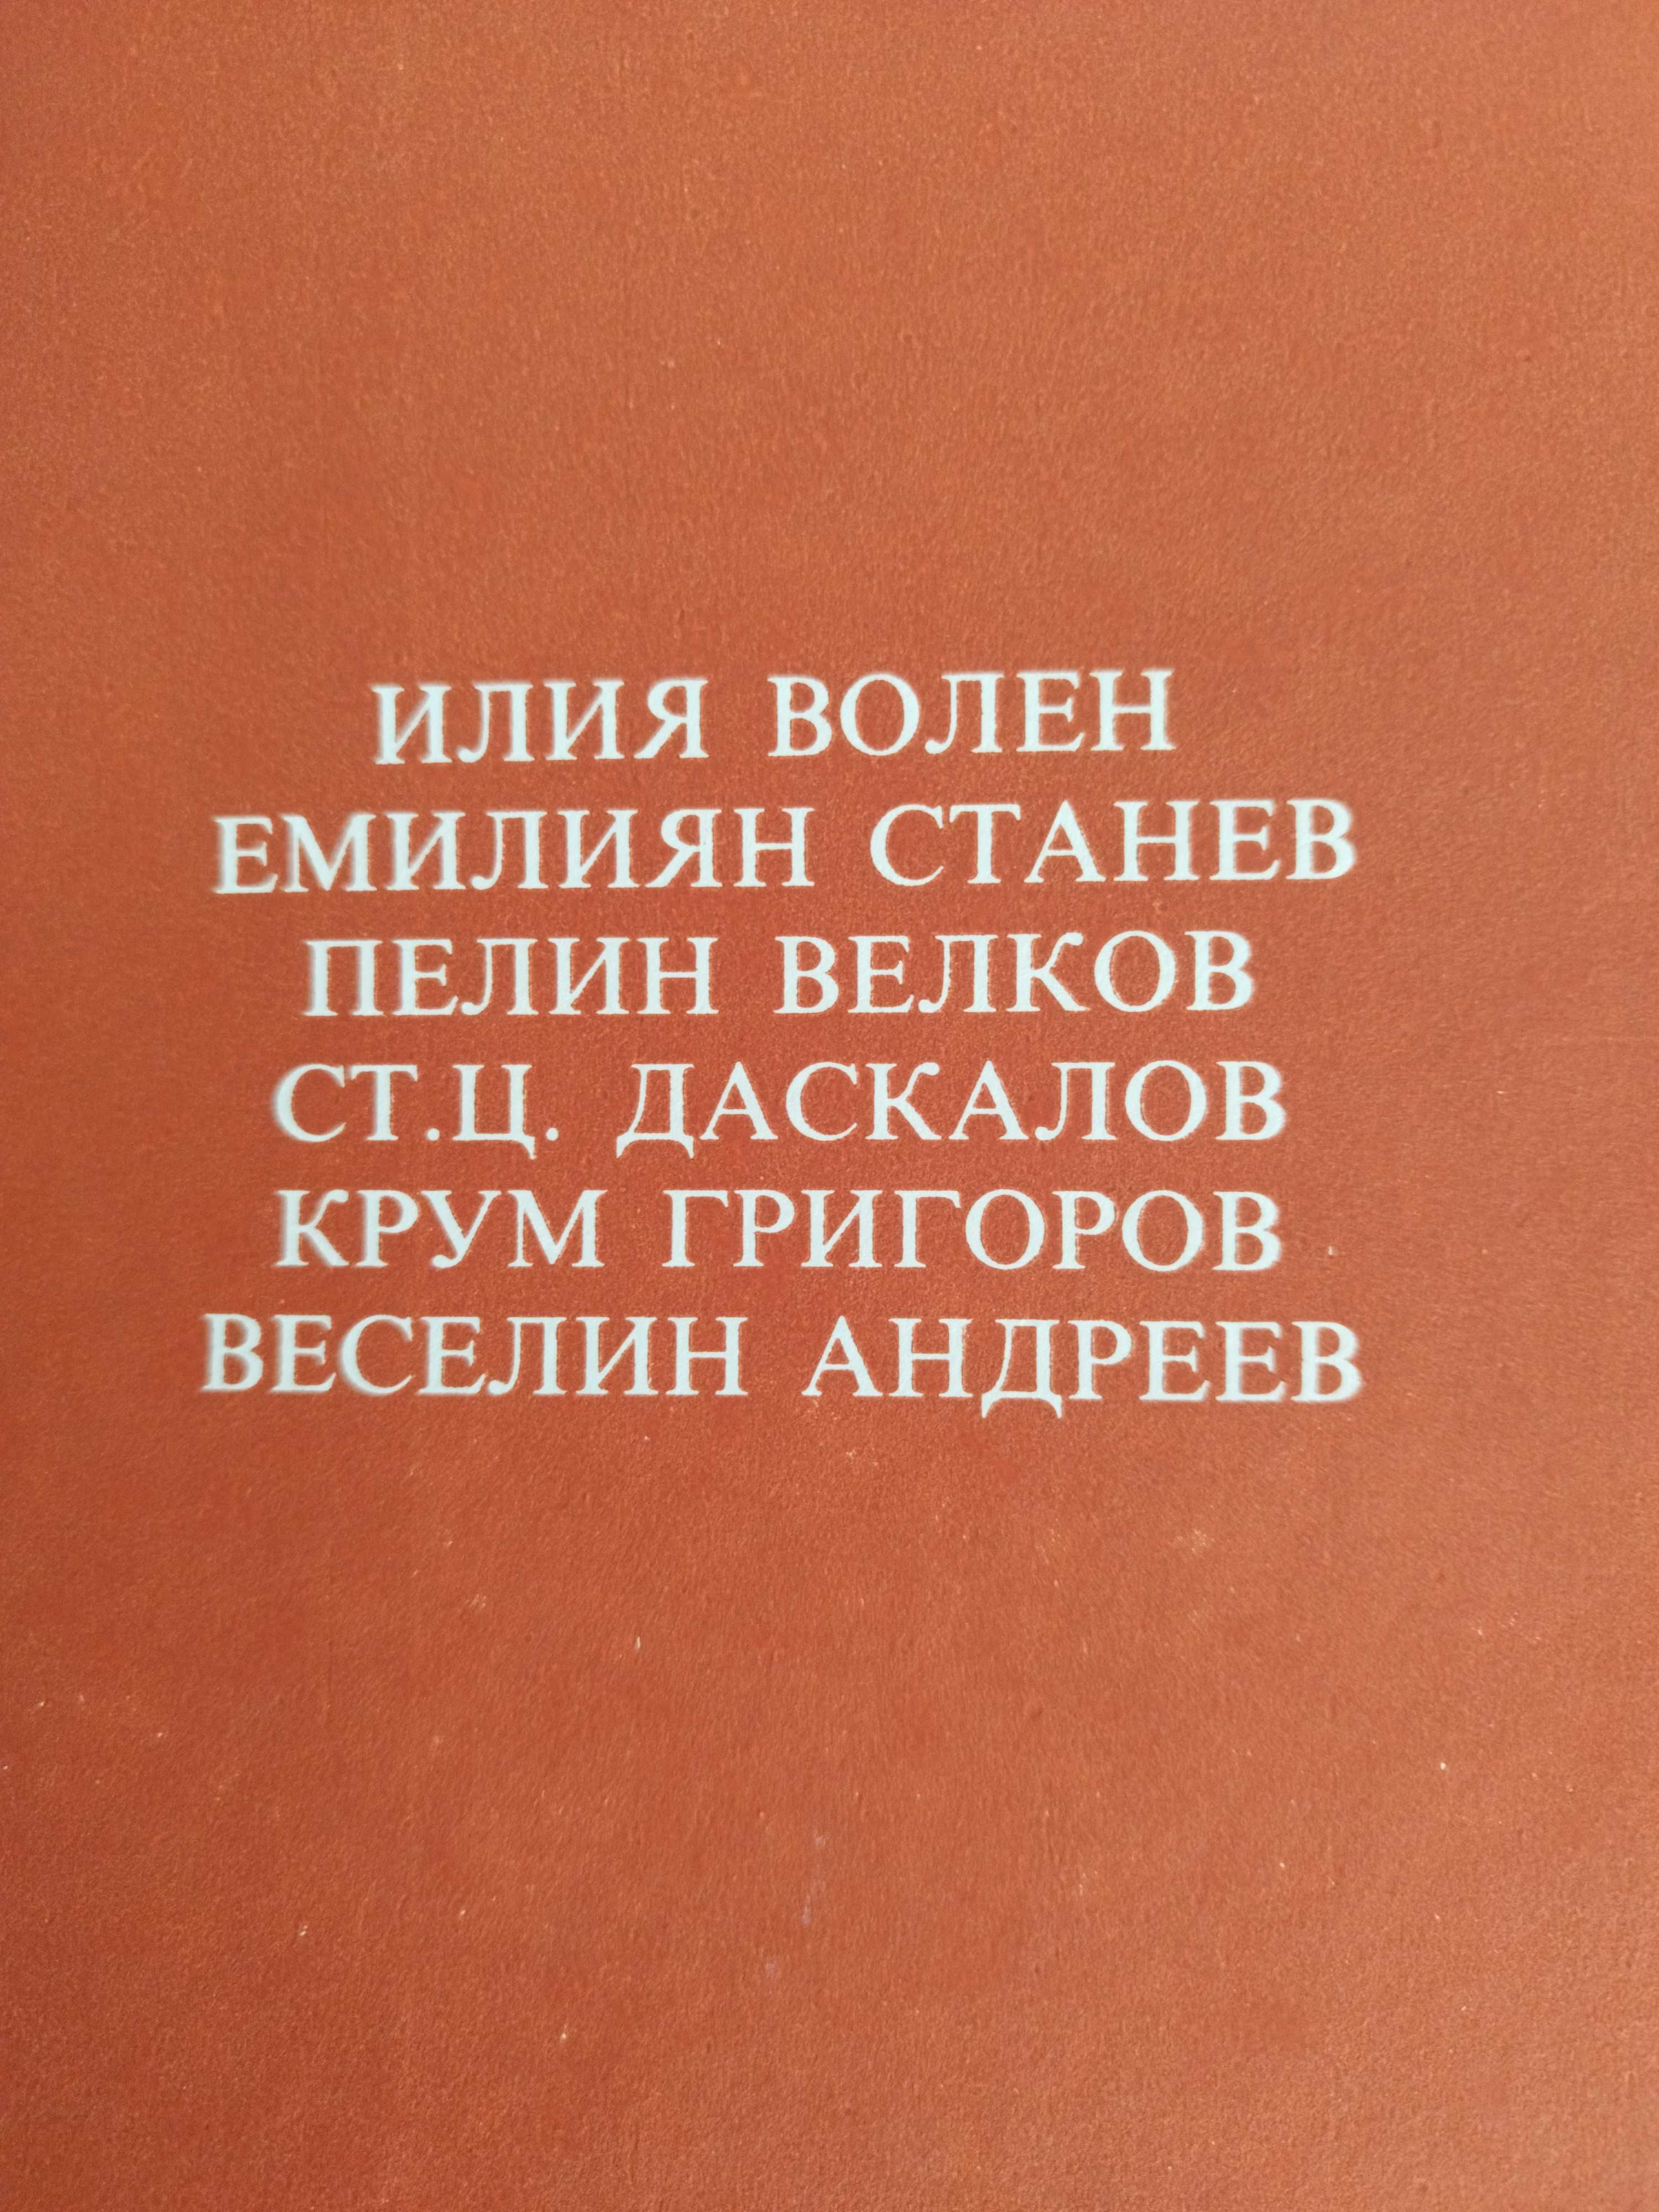 Български разкази за животни, 10 лв.400 стр.